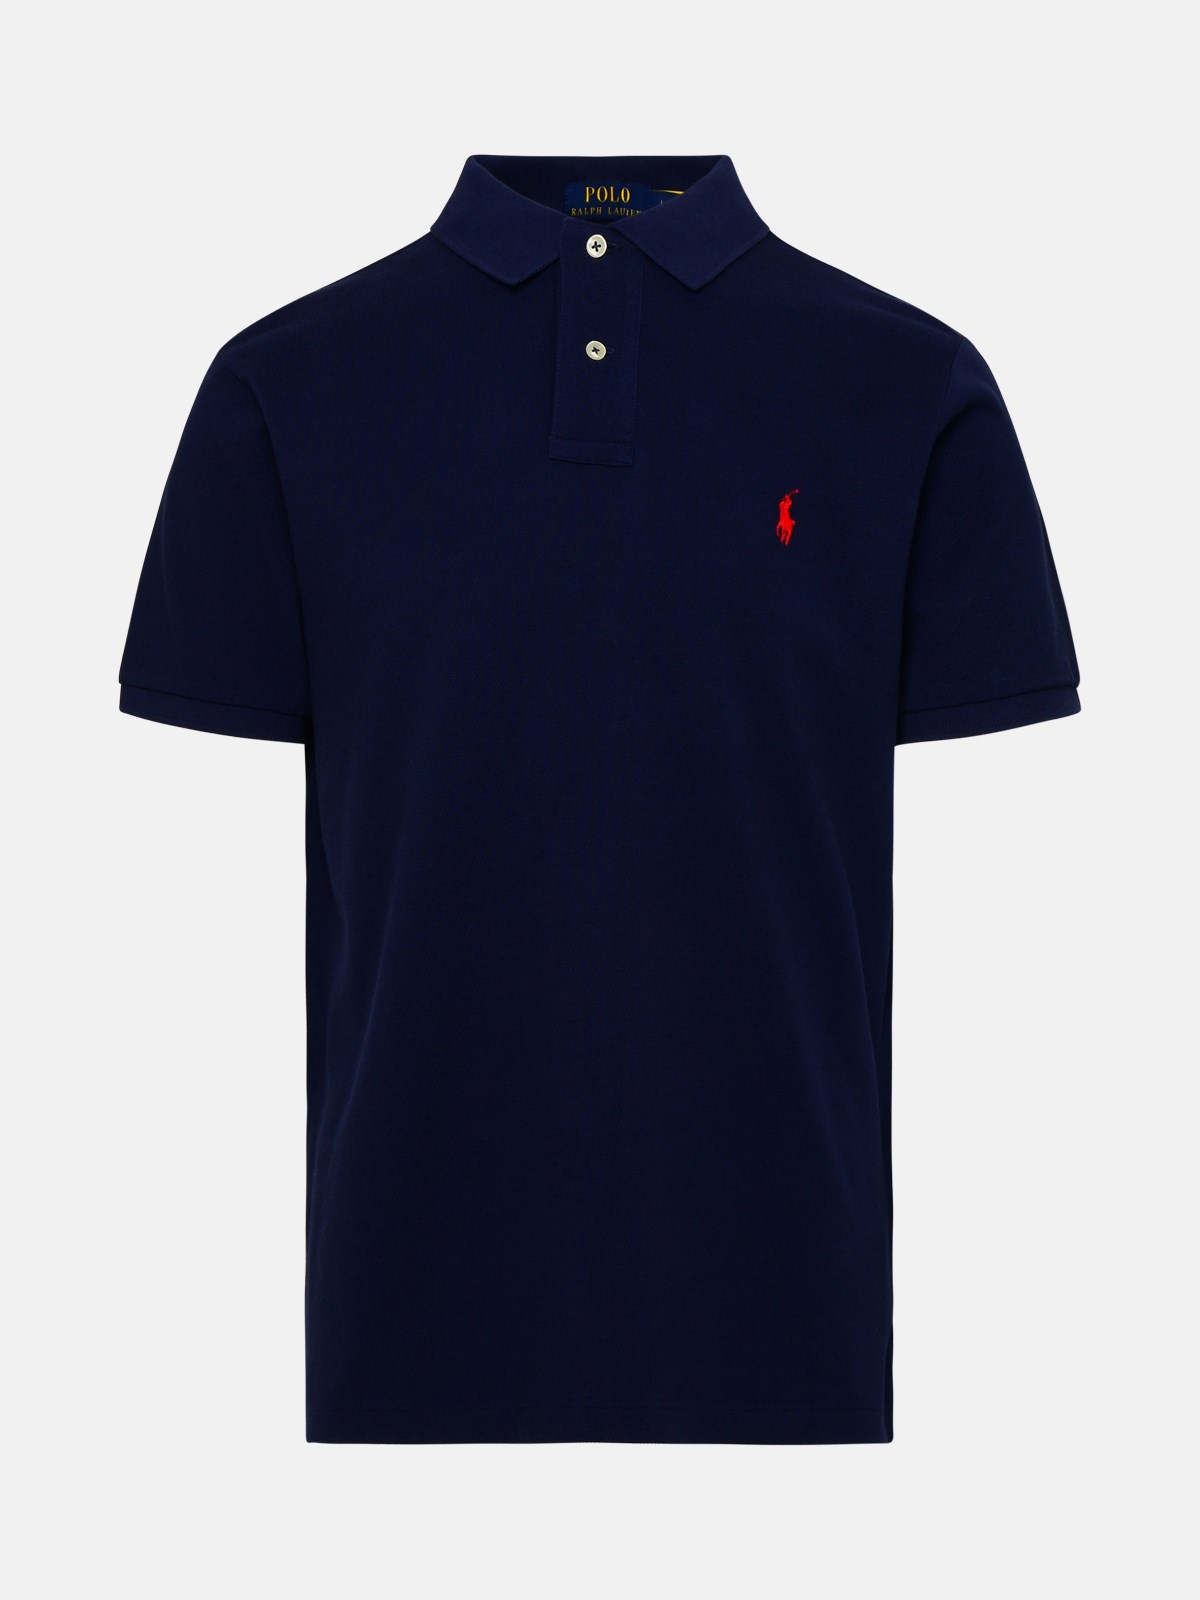 Polo Ralph Lauren Blue Cotton Polo Shirt In Navy